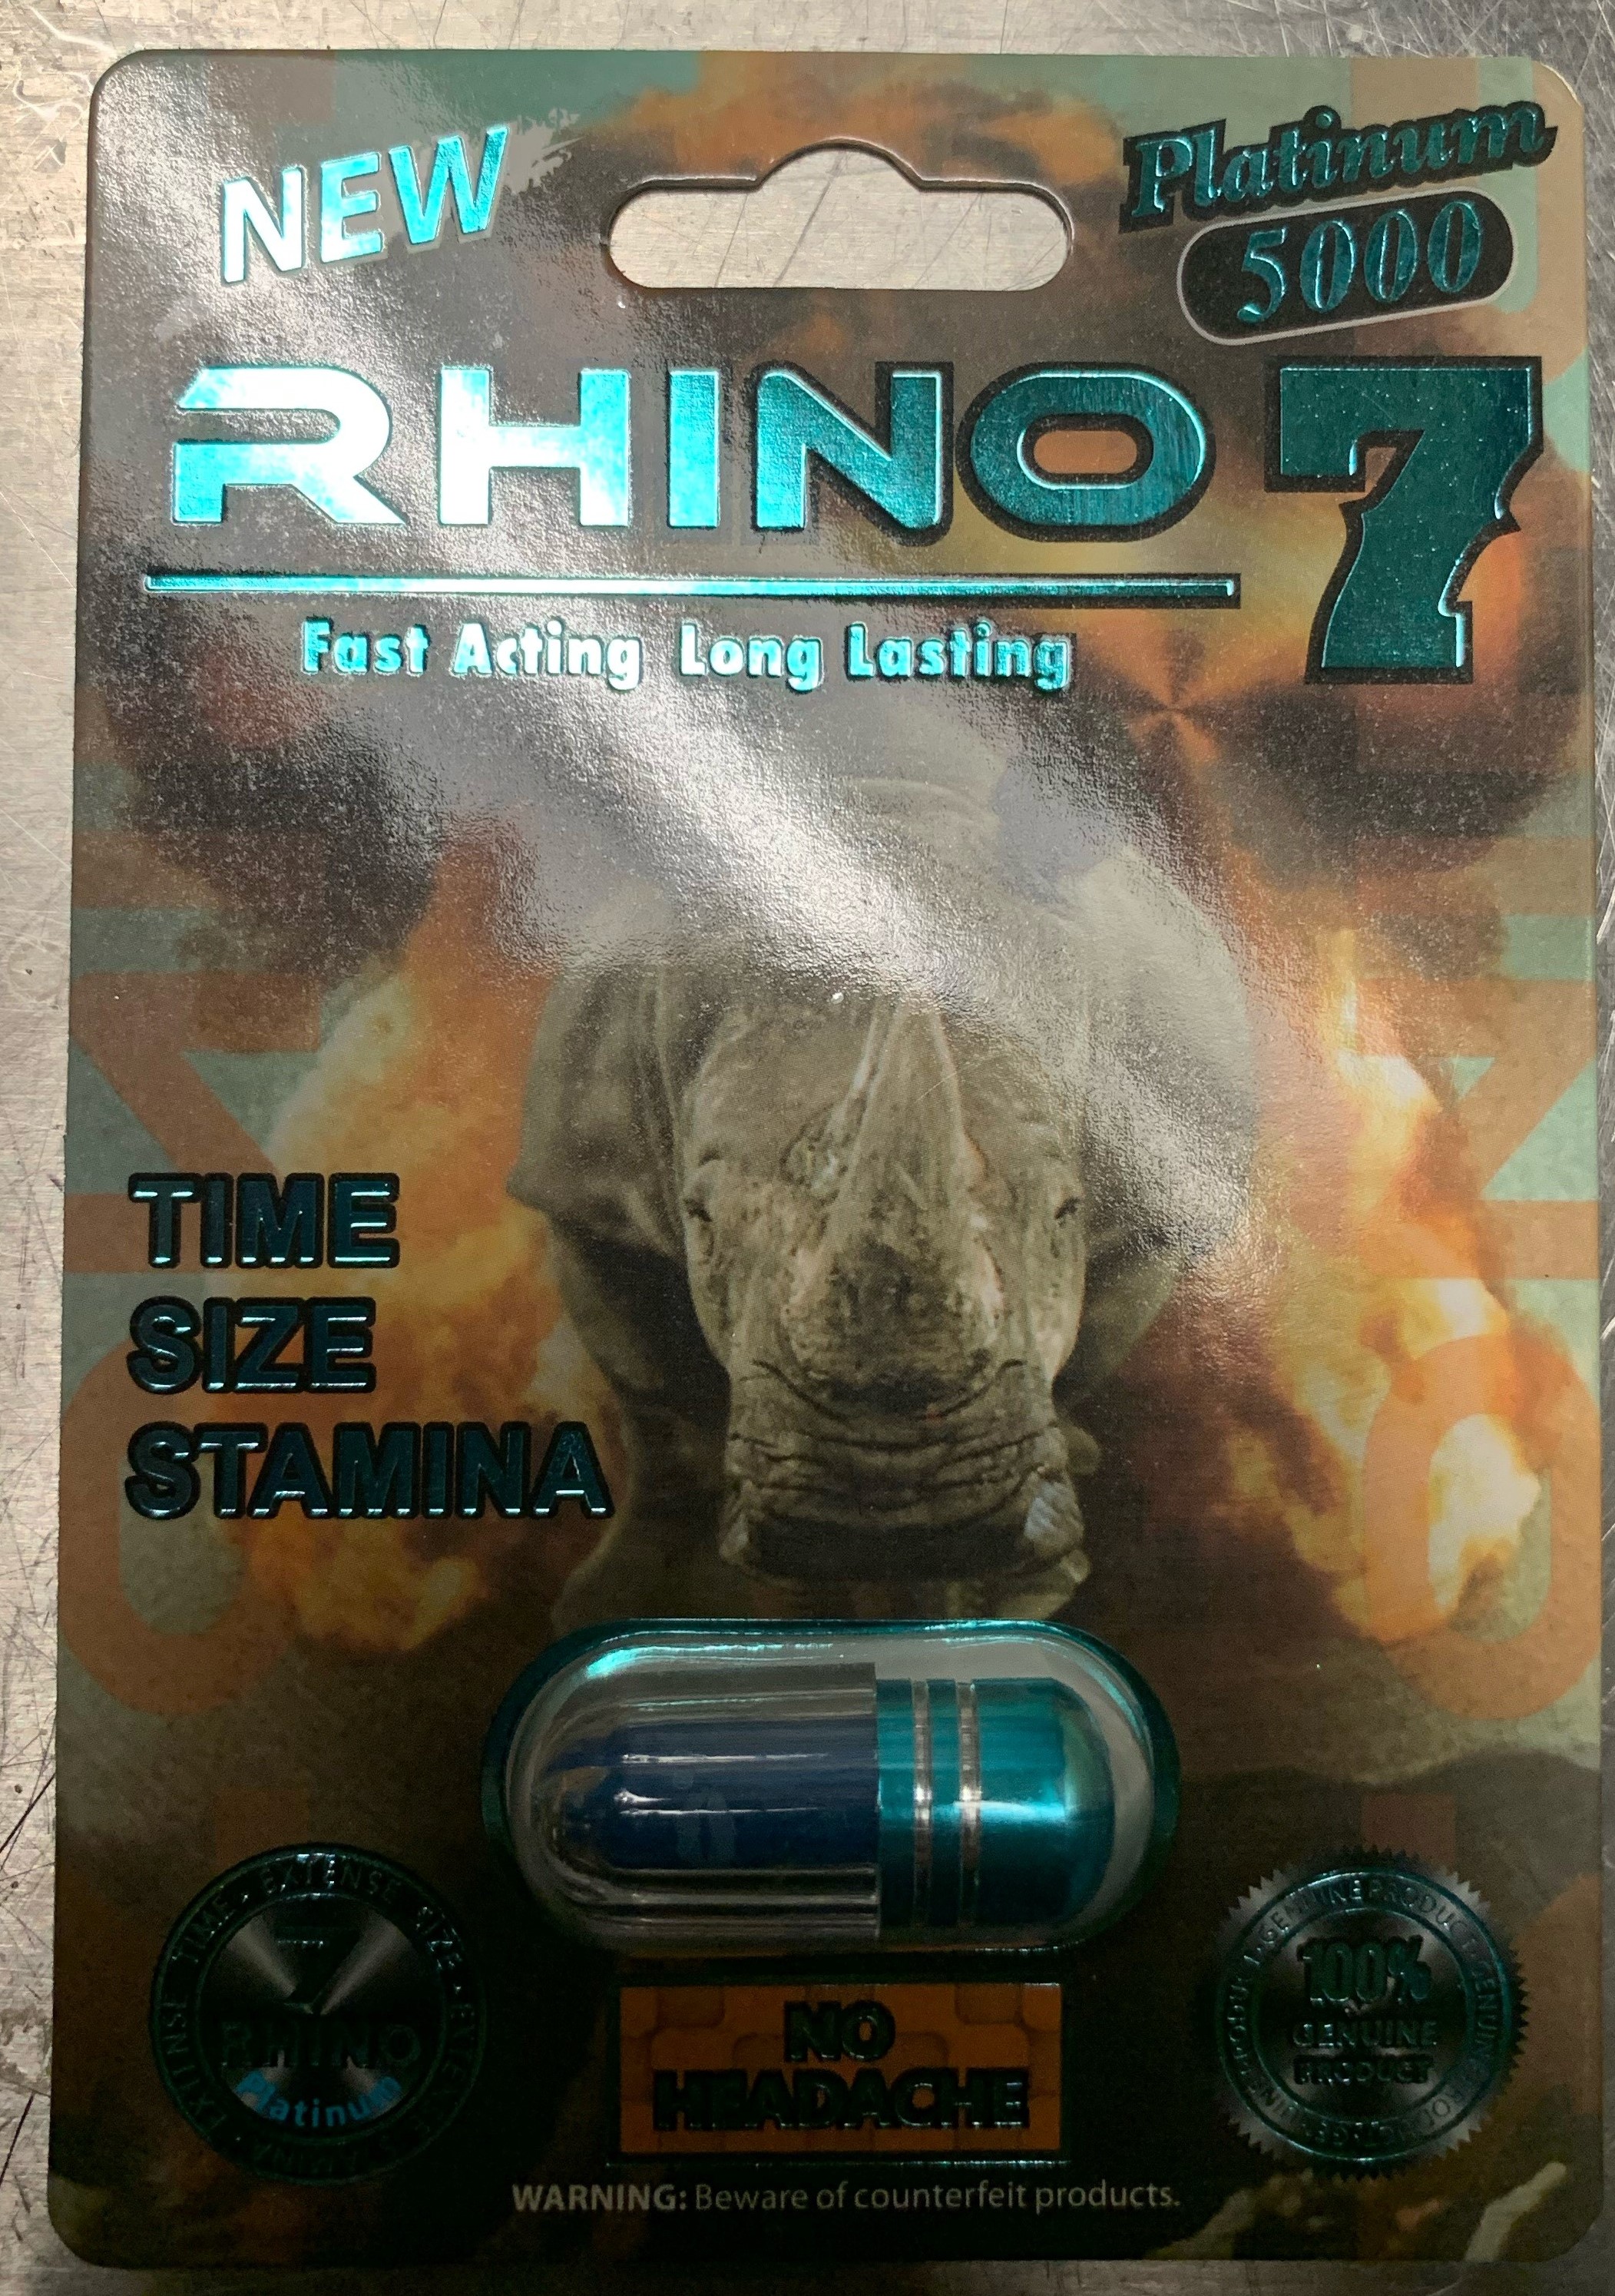 rhino 7 platinum 5000 for sale